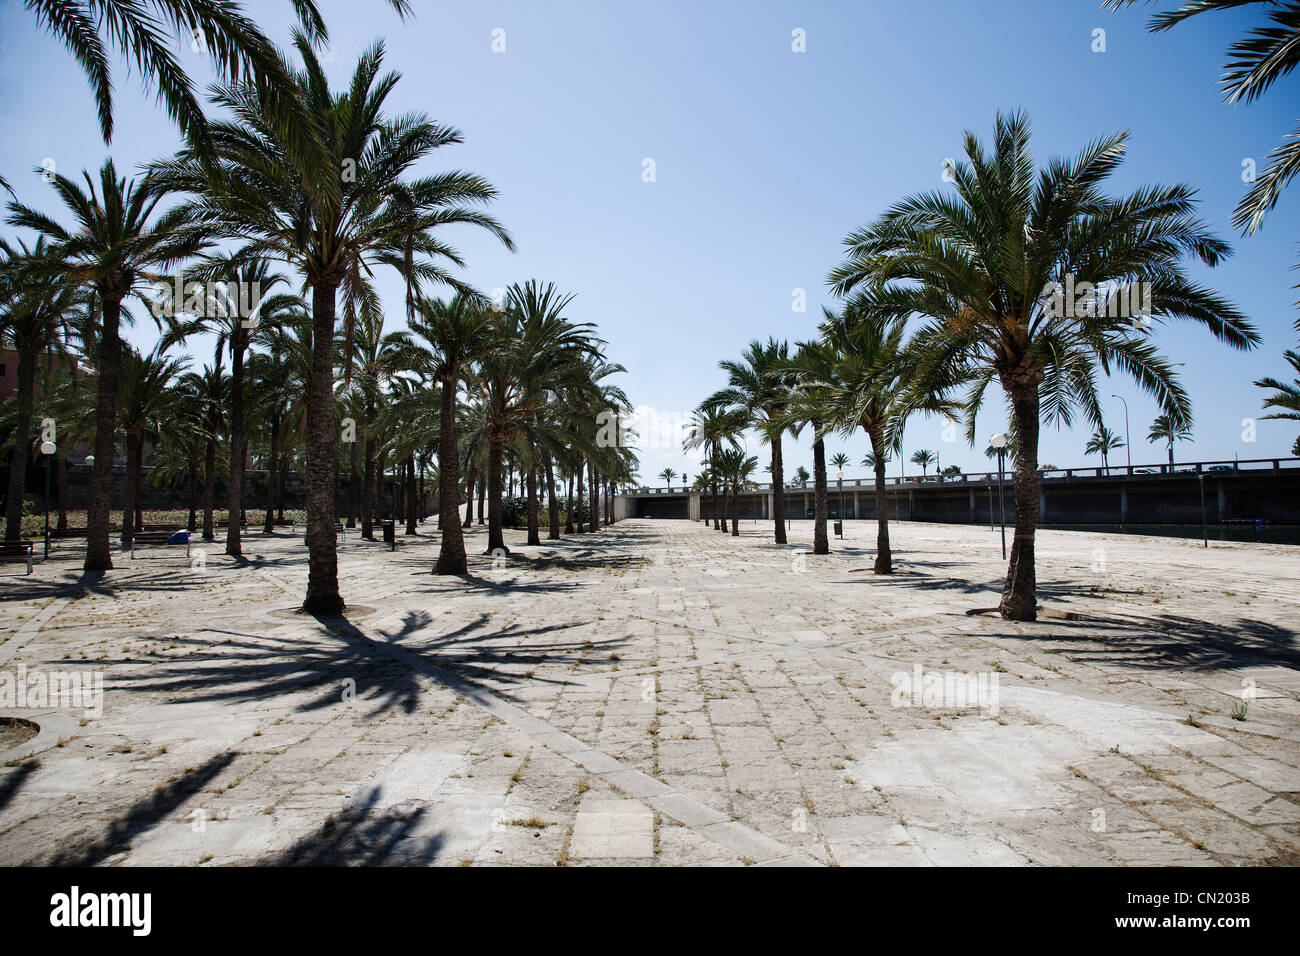 Palm trees and promenade, Majorca, Spain Stock Photo